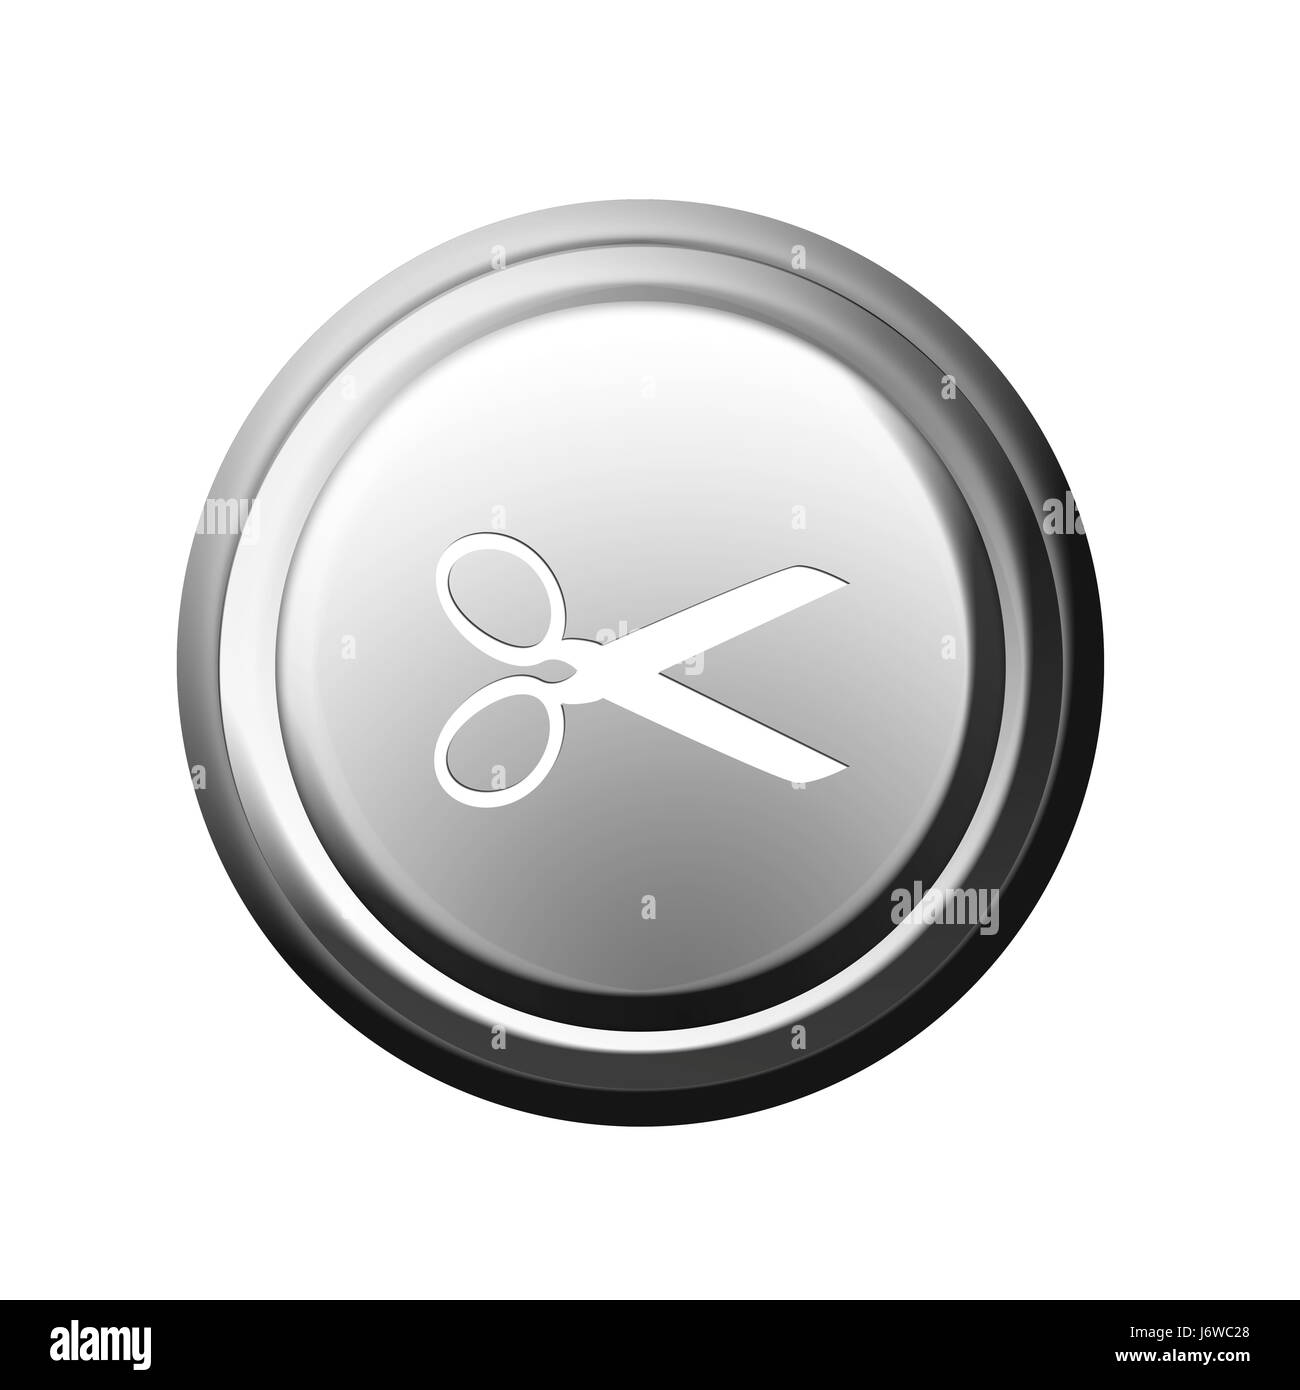 scissors button Stock Photo